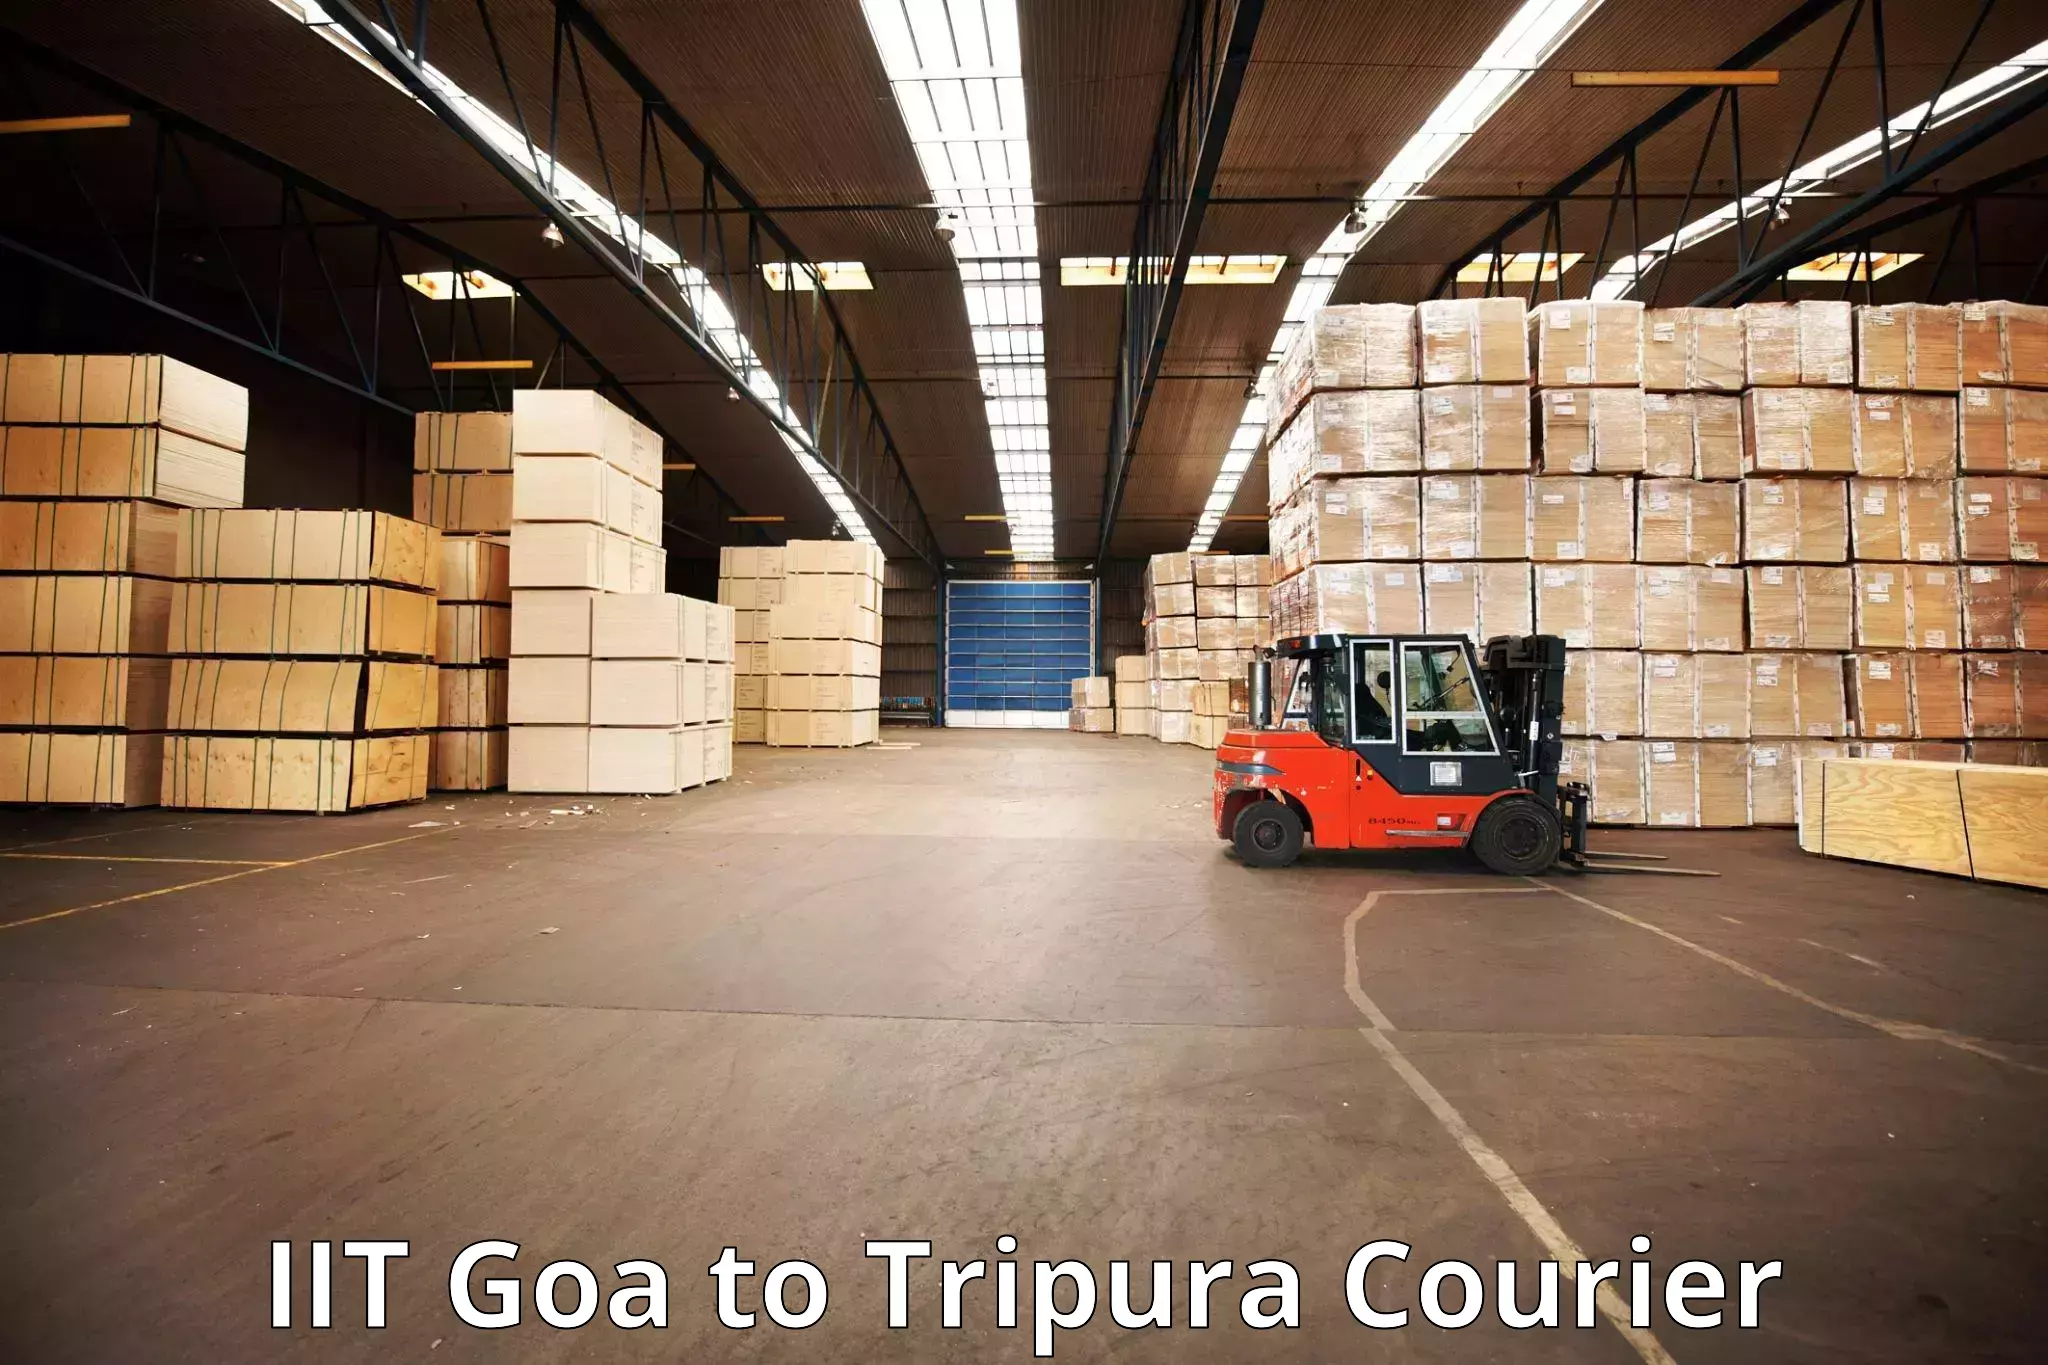 Luggage transport service IIT Goa to Khowai